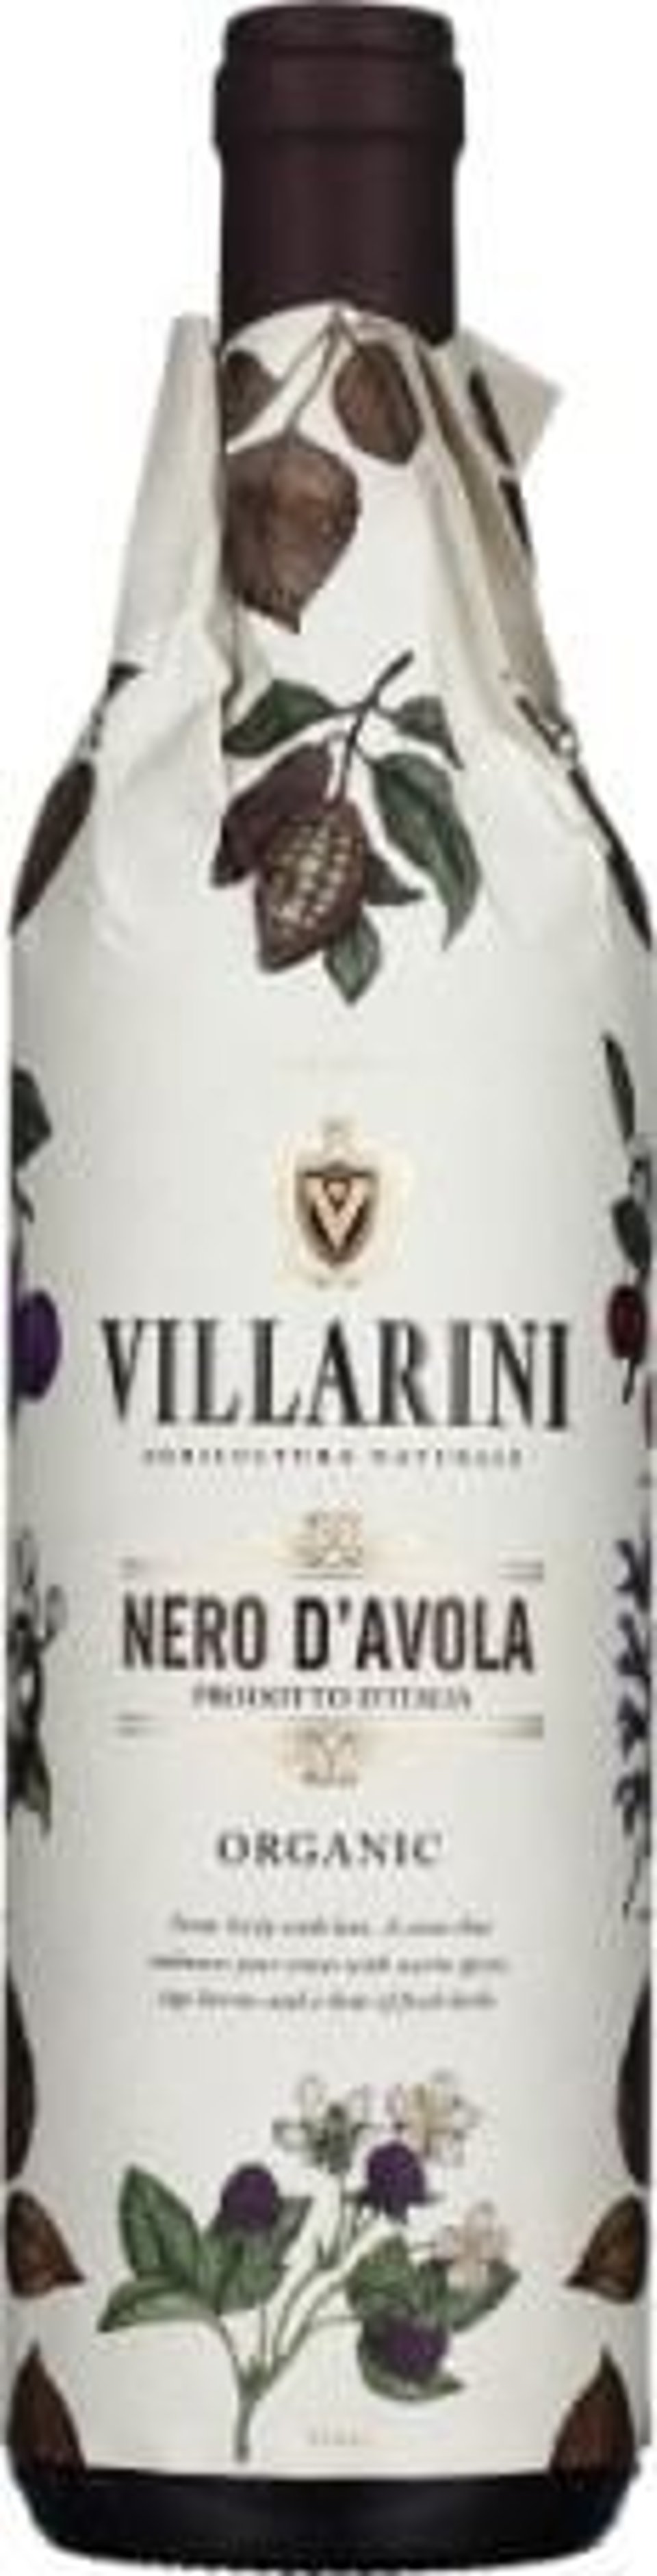 Fles Villarini Nero d'Avola Organic 75CL